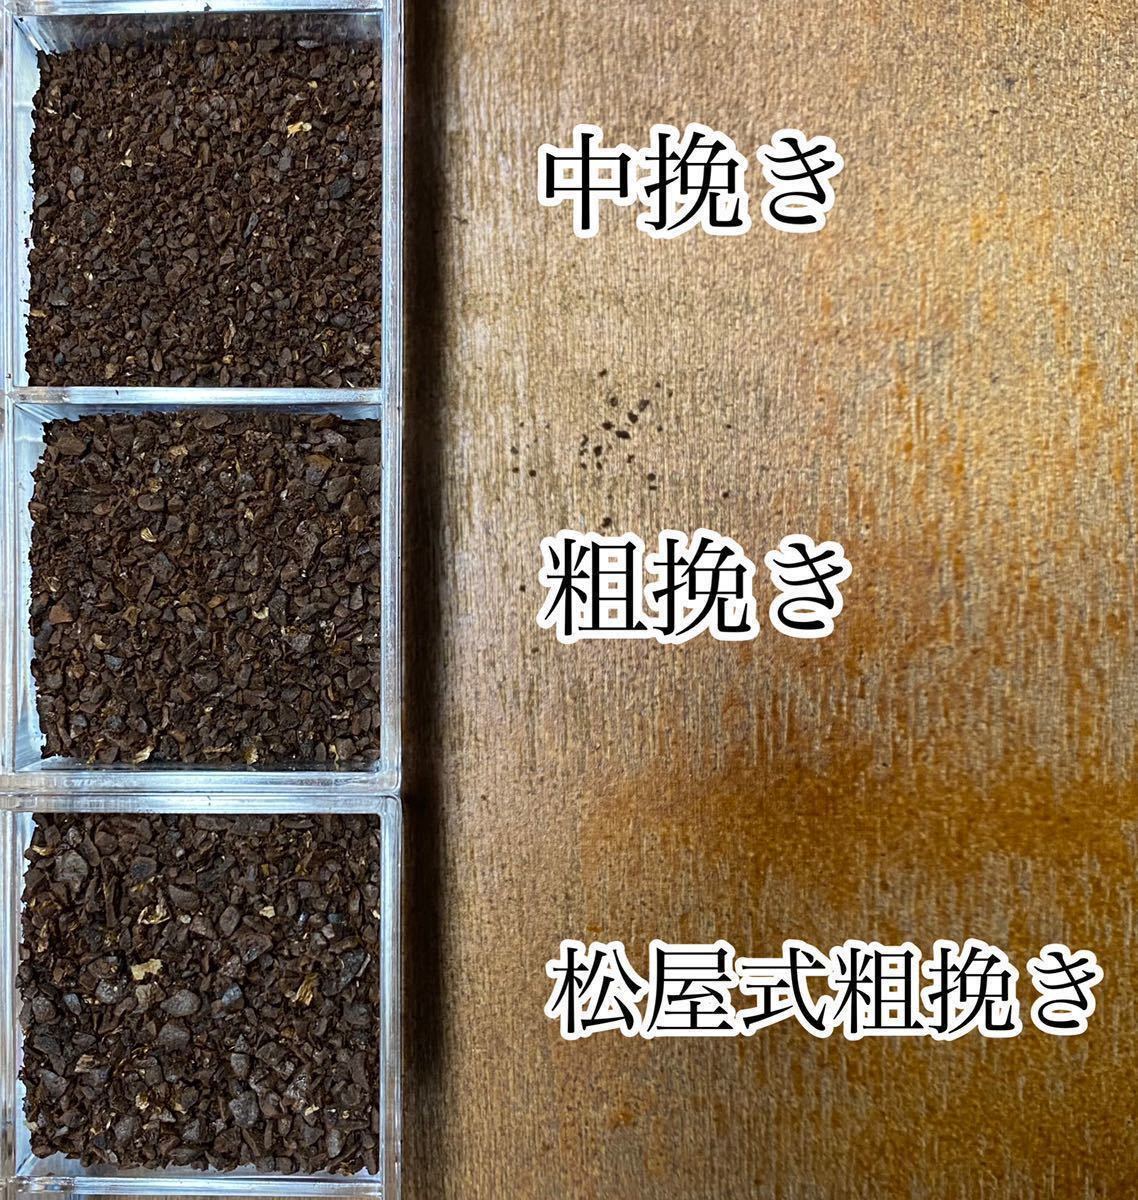 夏限定ブレンドセットB 自家焙煎コーヒー豆3種(100g×3個)